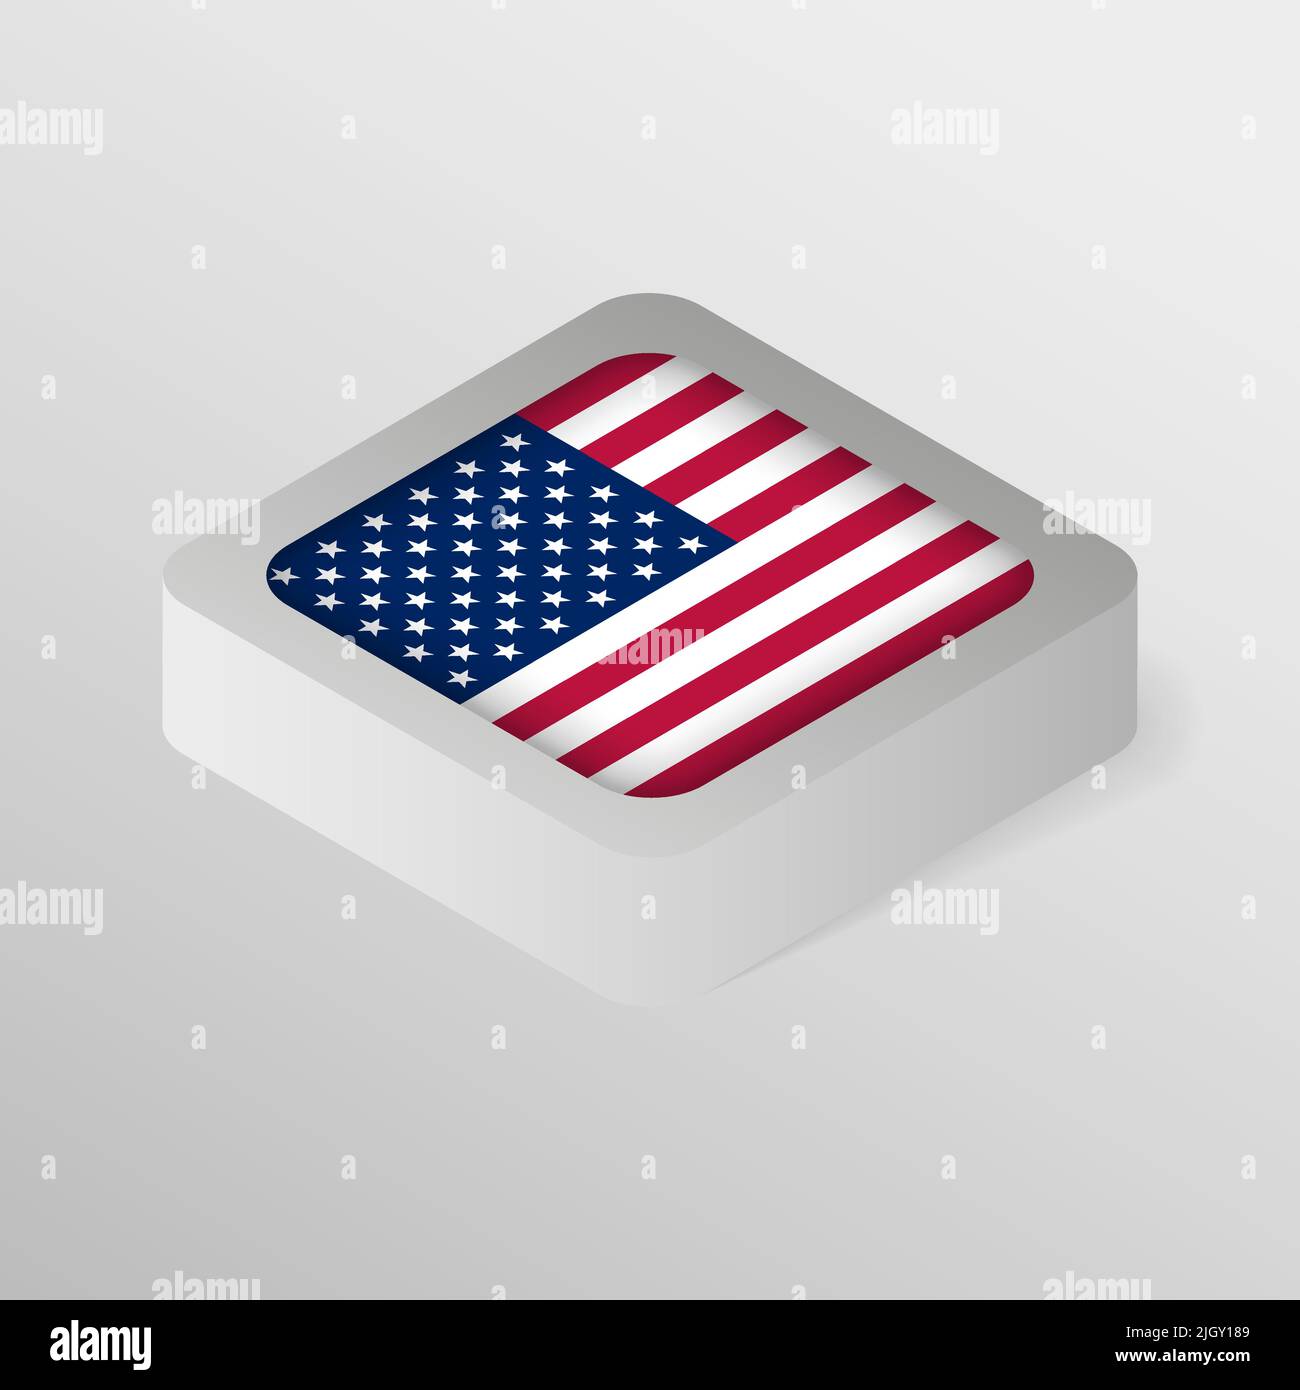 EPS10 Vector Patriotic Shield con bandiera degli Stati Uniti d'America. Un elemento di impatto per l'uso che si desidera fare di esso. Illustrazione Vettoriale